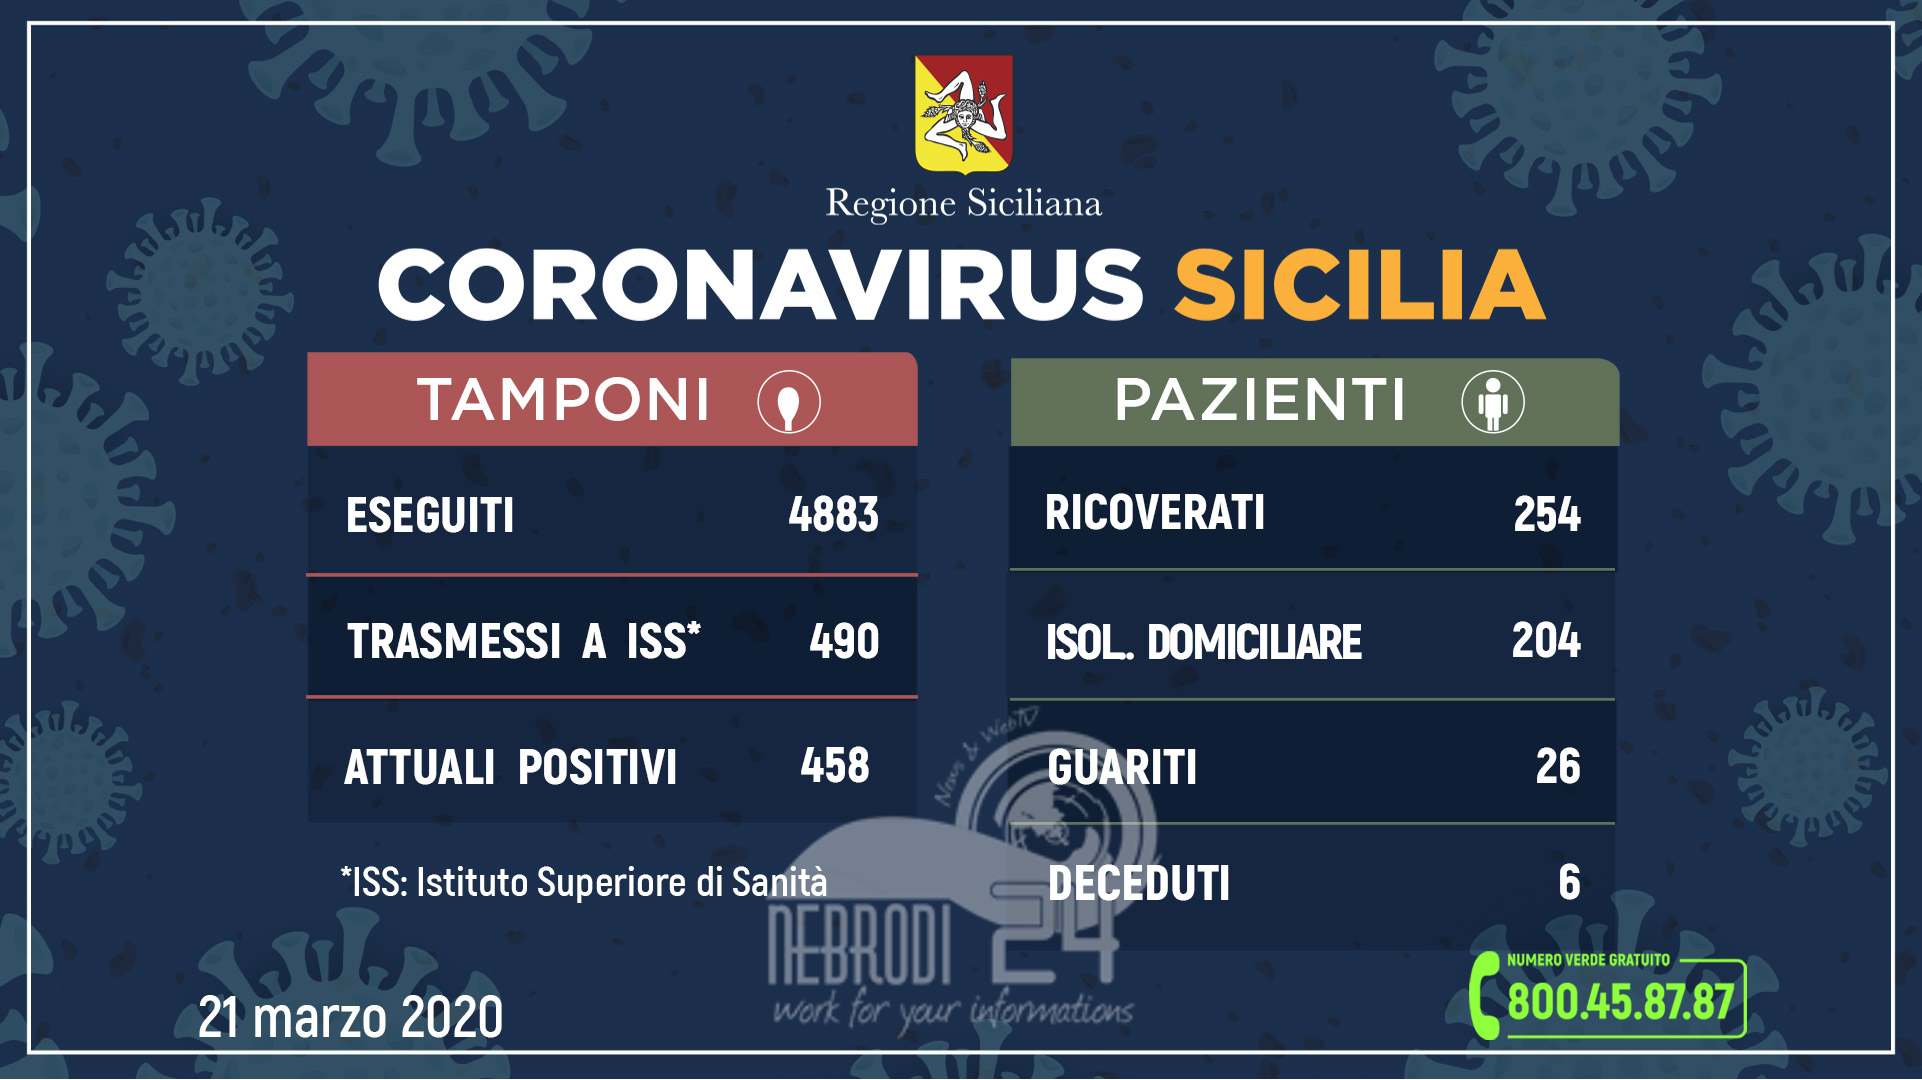 Coronavirus: l’aggiornamento in Sicilia, 458 attuali positivi 26 guariti. (+79 rispetto a ieri)